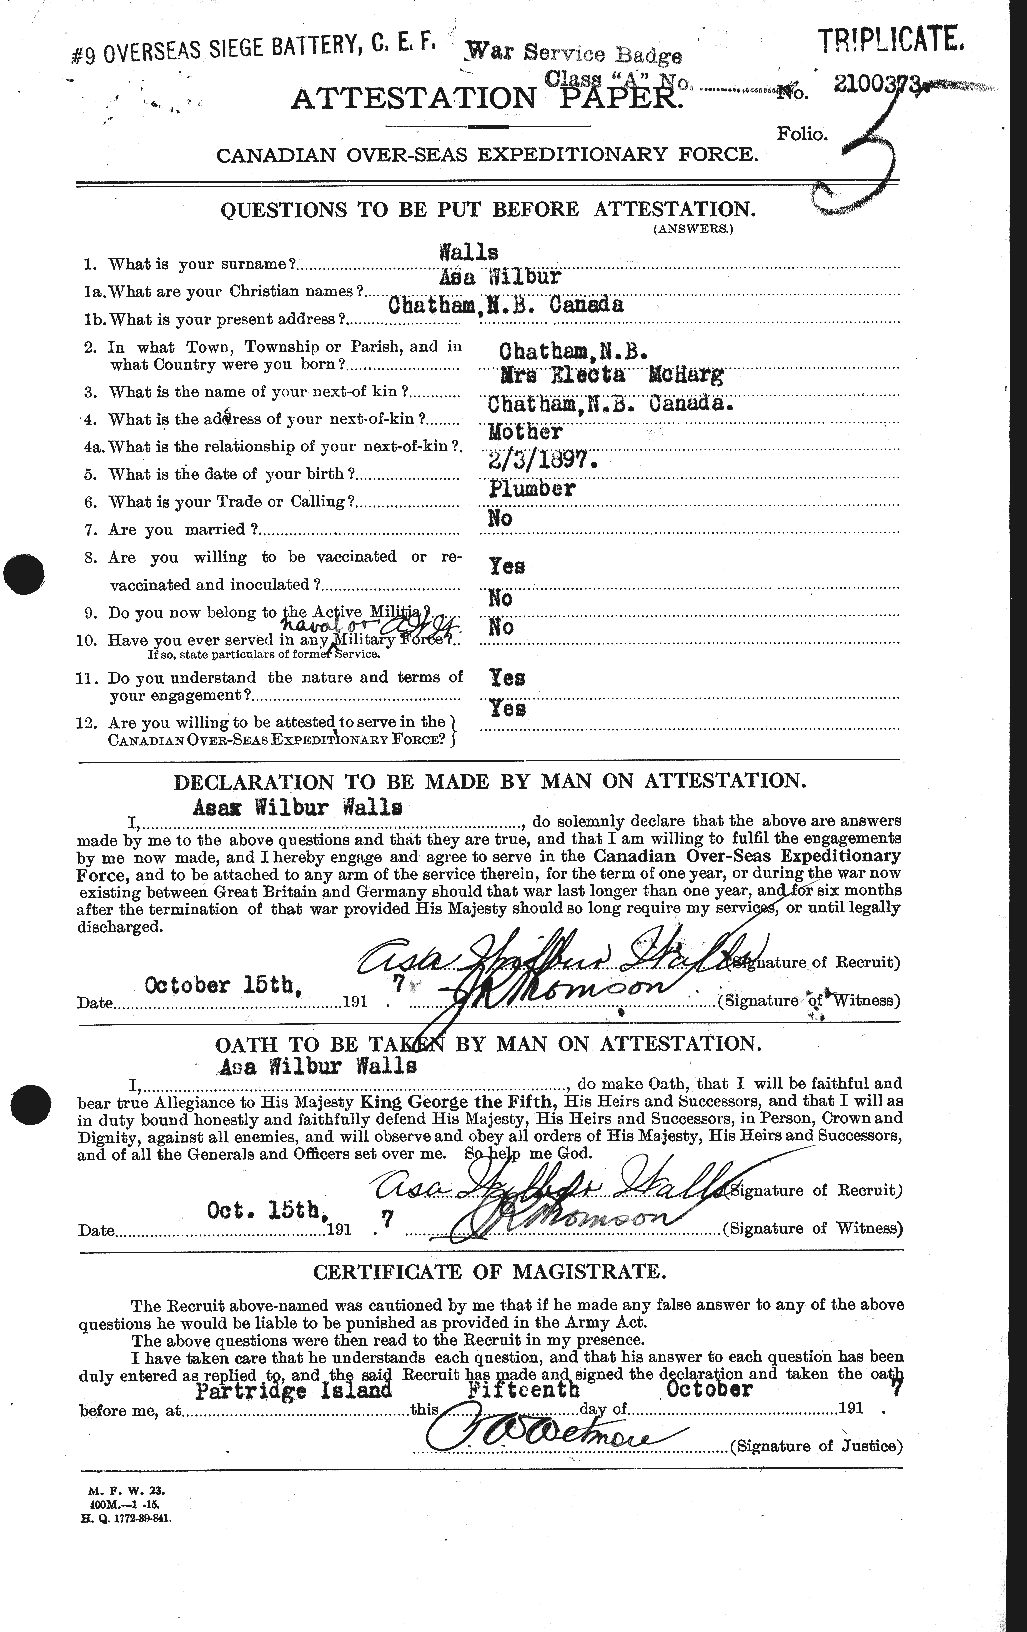 Dossiers du Personnel de la Première Guerre mondiale - CEC 667030a